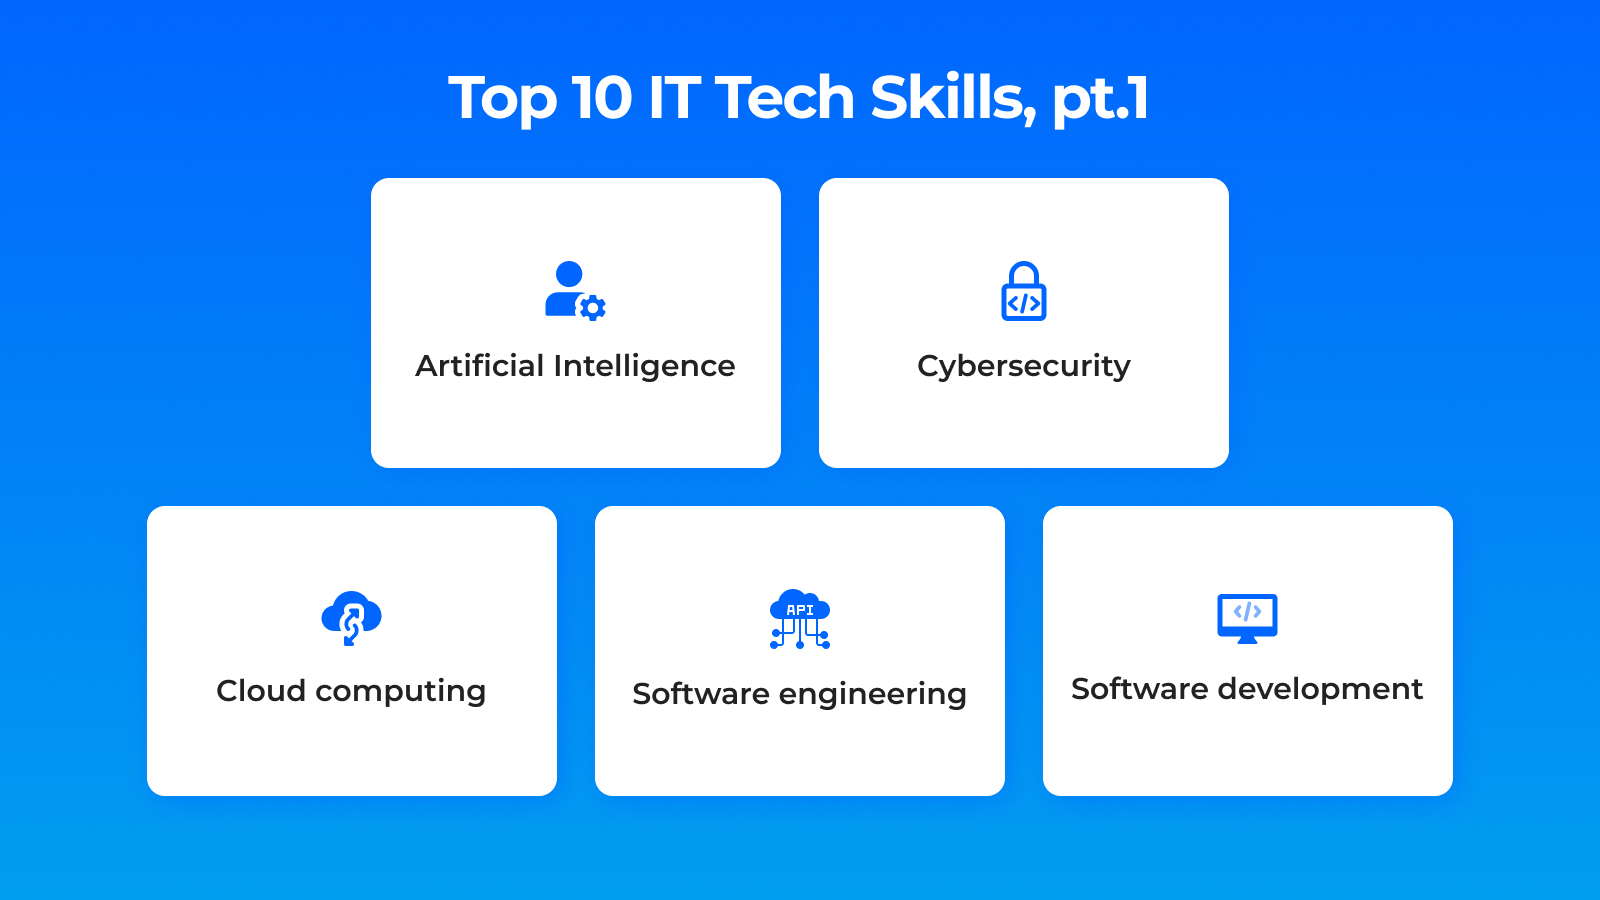 Top 10 IT Tech Skills, pt.1